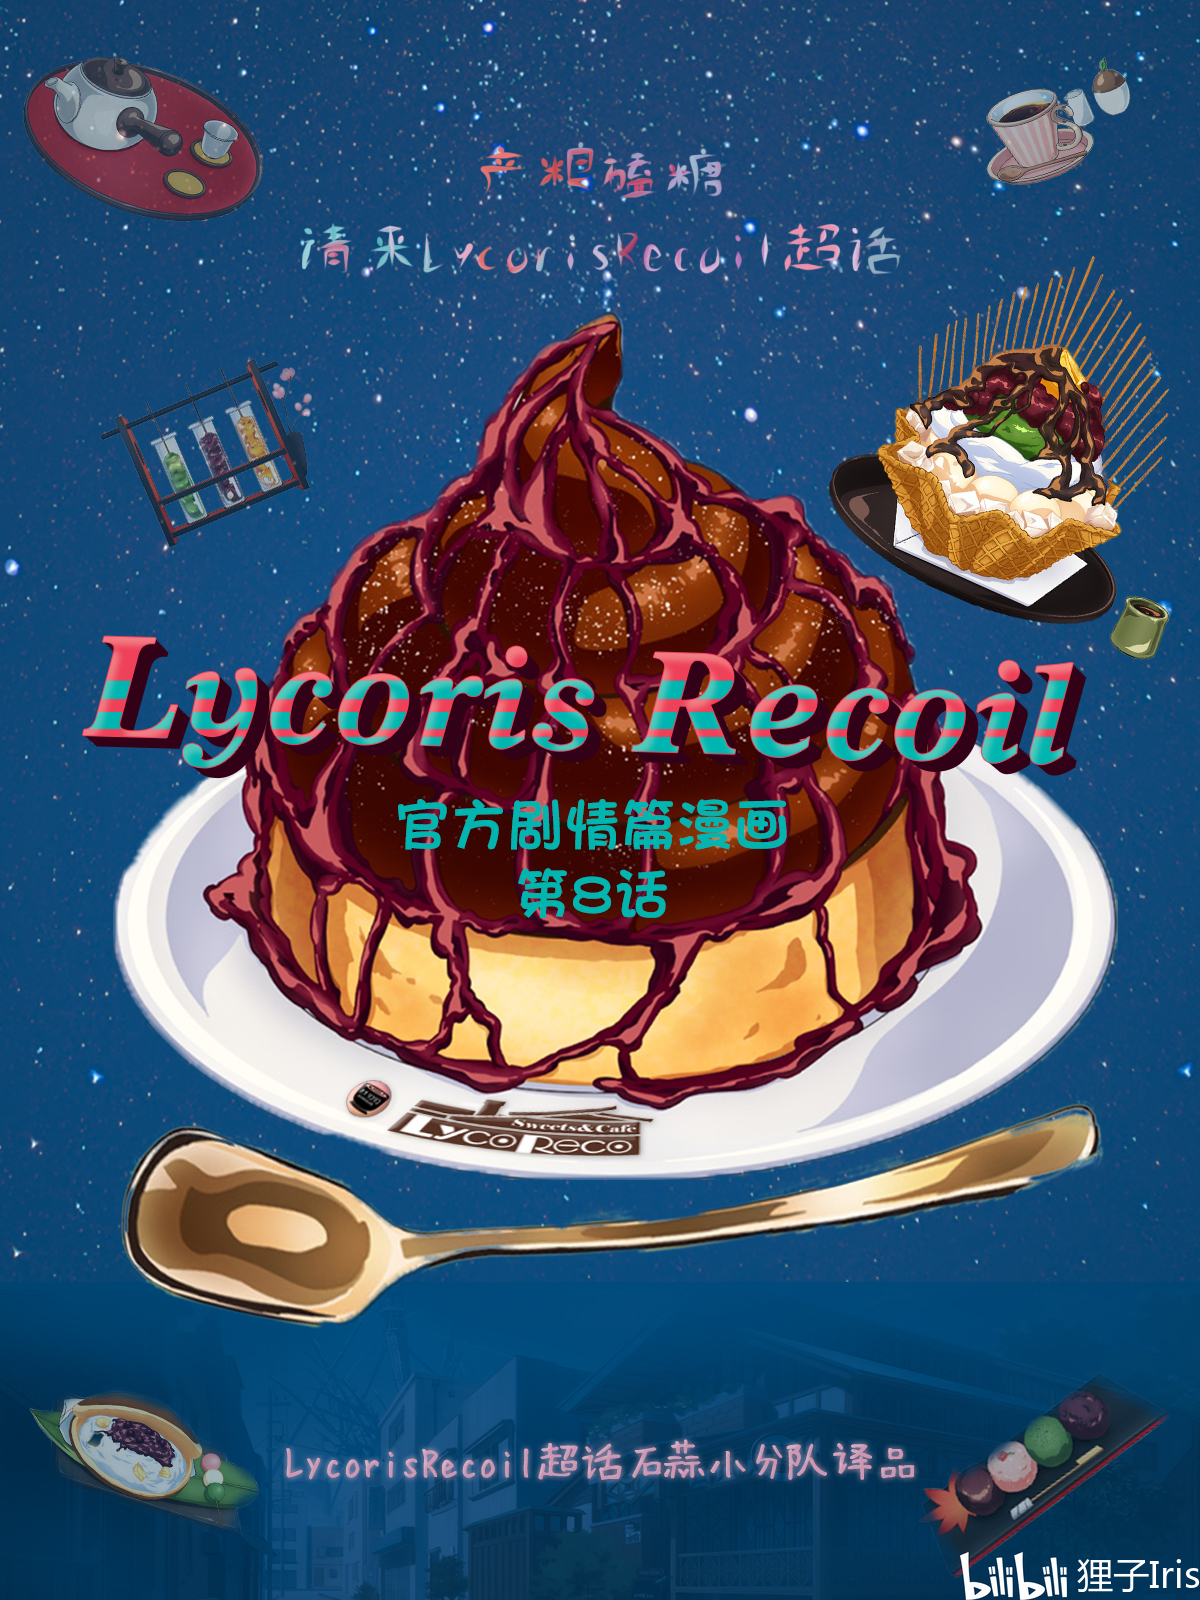 【小分队汉化】第8话 官方剧情篇漫画 LycorisRecoil莉可丽丝